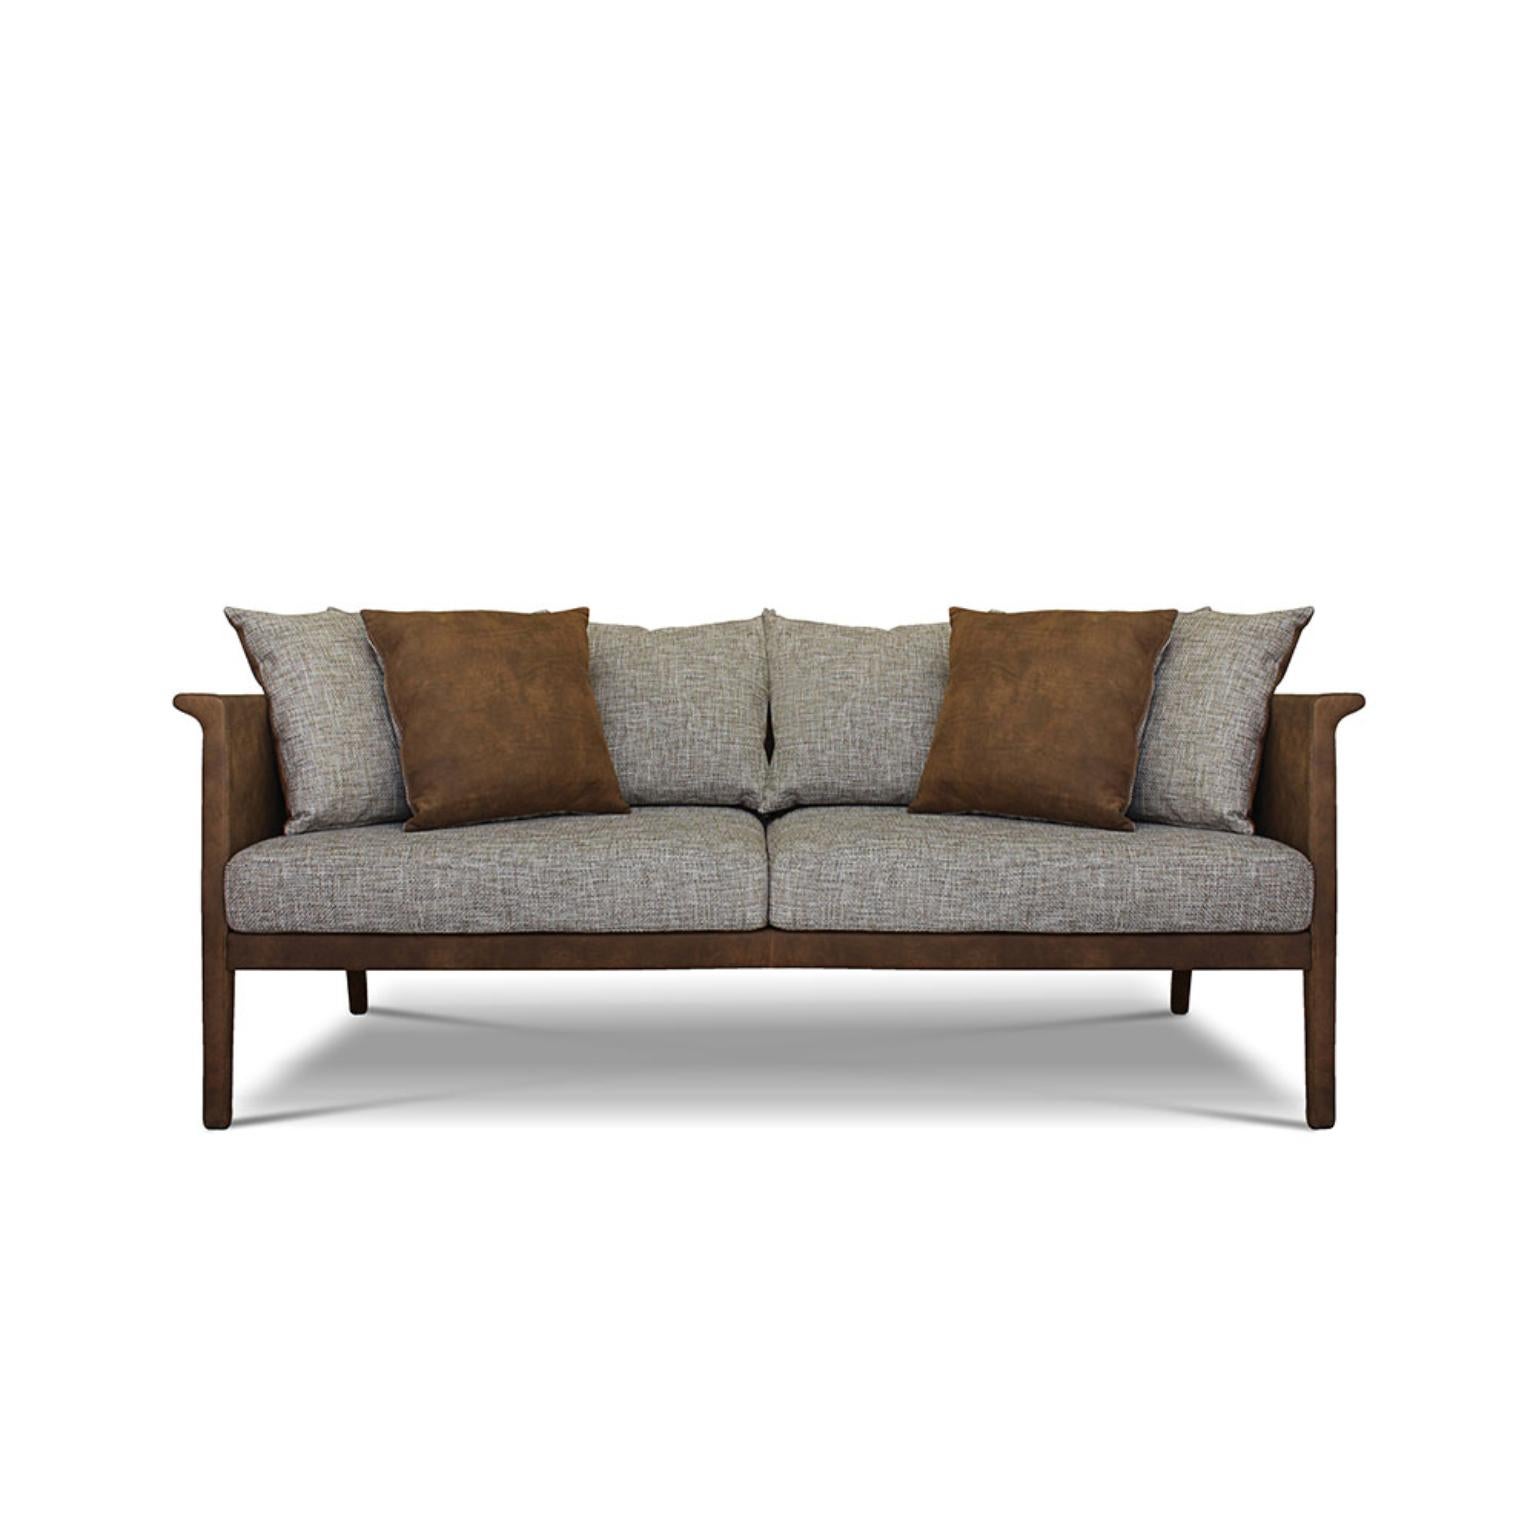 Einzigartiges franz sofa by Collector
Abmessungen: B 200 x T 85 x H 86 cm
MATERIALIEN: Stoff, Leder.
Andere MATERIALs sind verfügbar. Je nach MATERIAL kann der Preis variieren.

Die Marke Collector hat sich zum Ziel gesetzt, Teil des täglichen